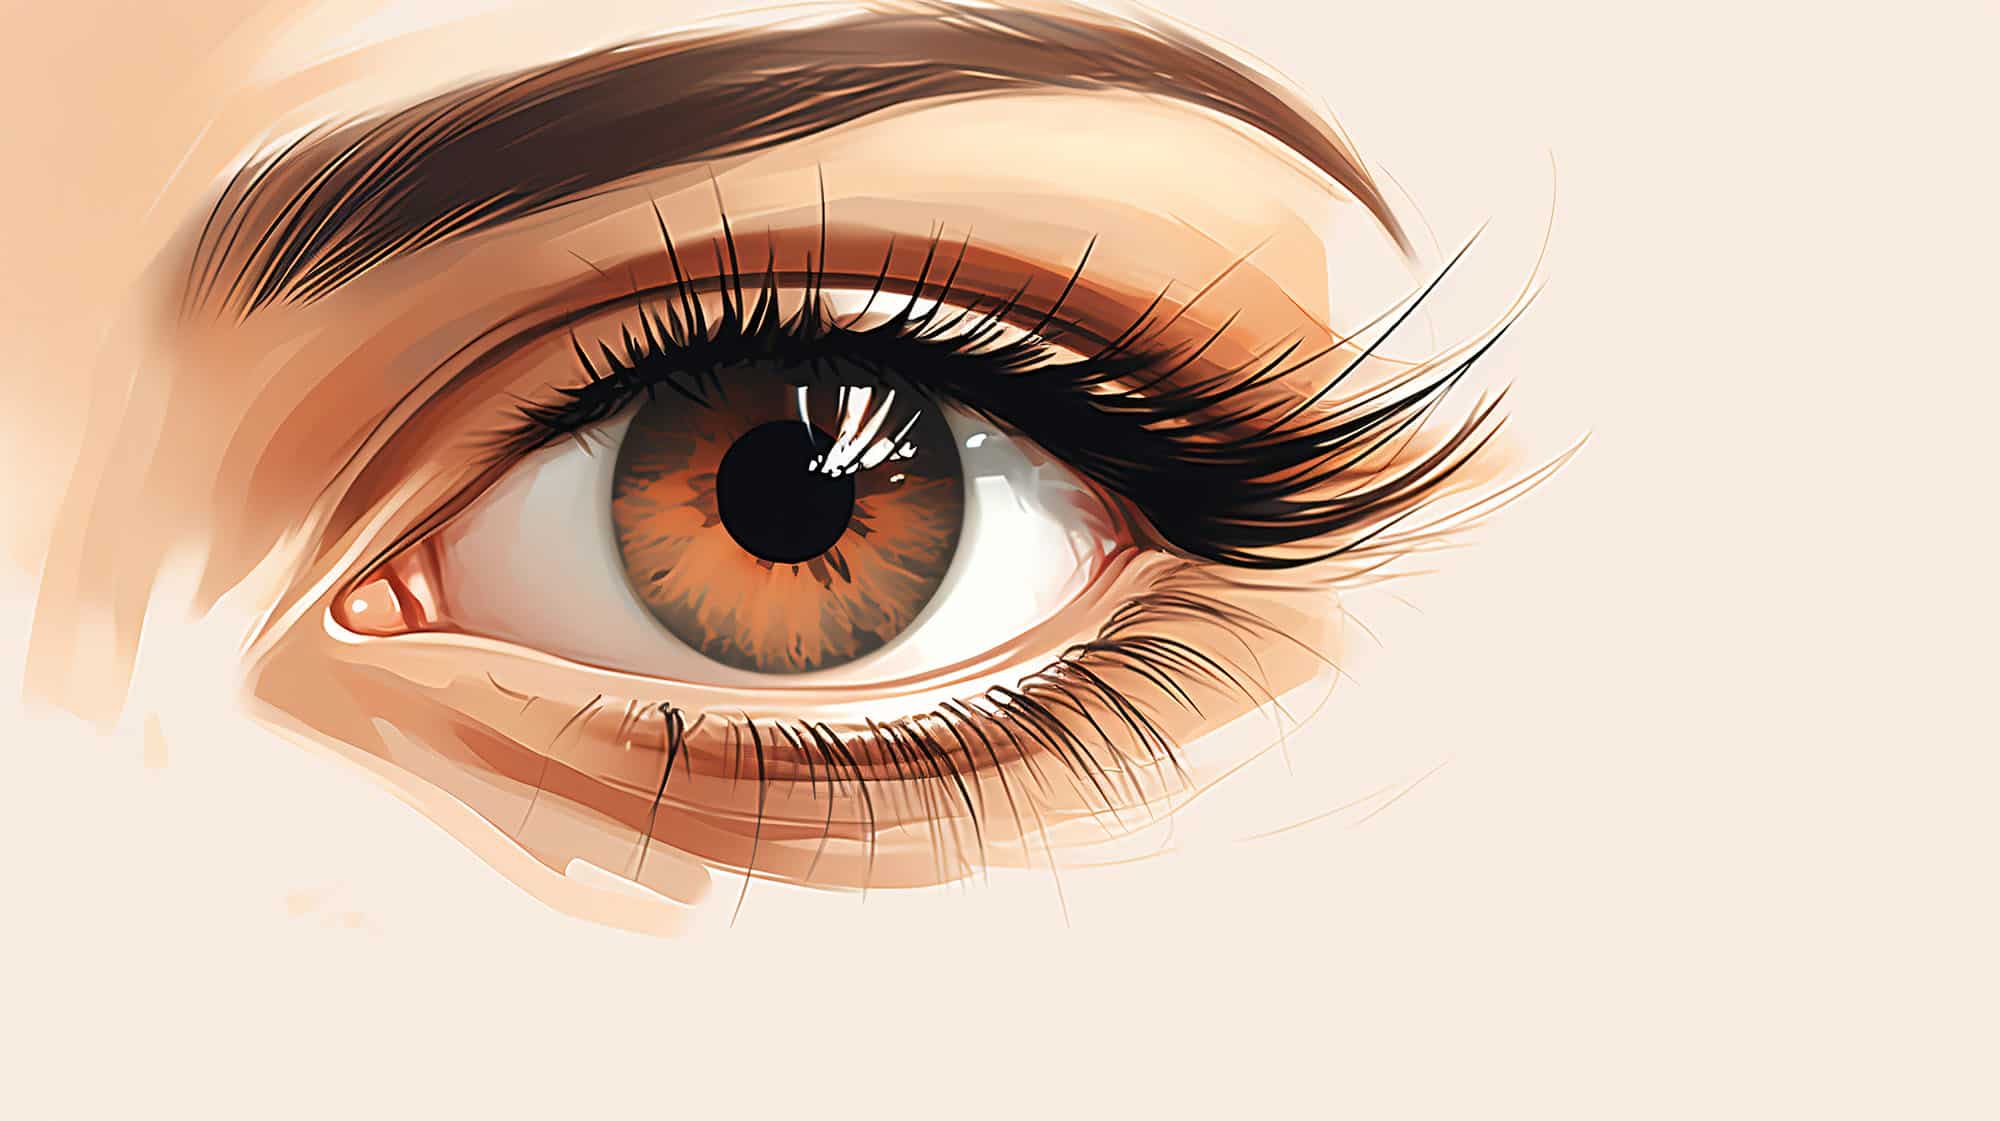 Trucco occhi marroni 50 anni: make up per uno sguardo antiage